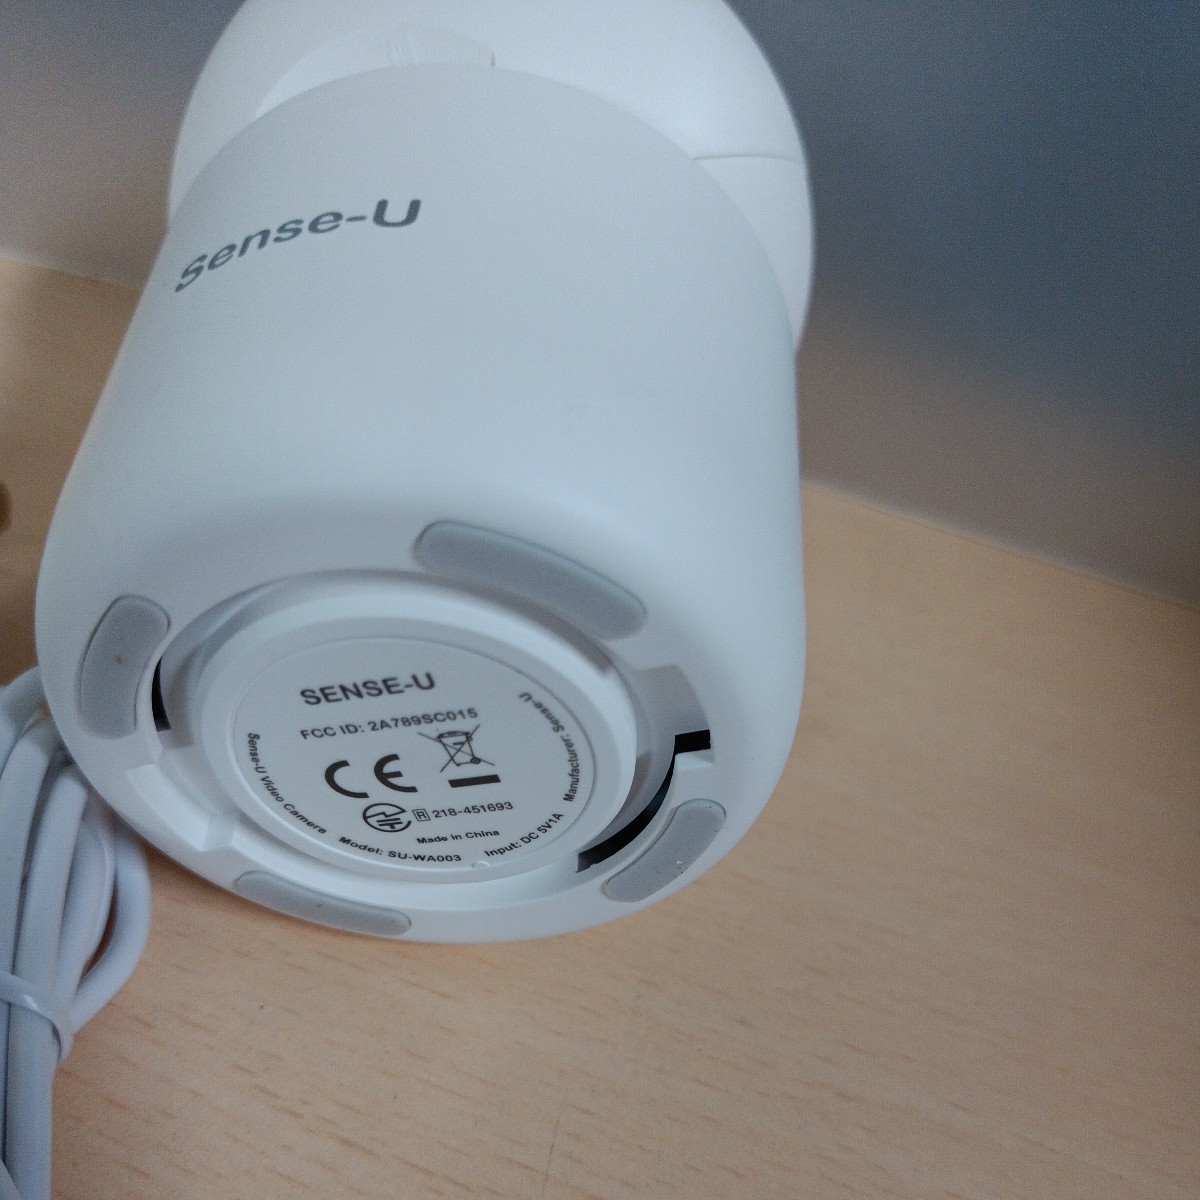 y022209e Sense-U Smart детский монитор младенец видеть защита камера 